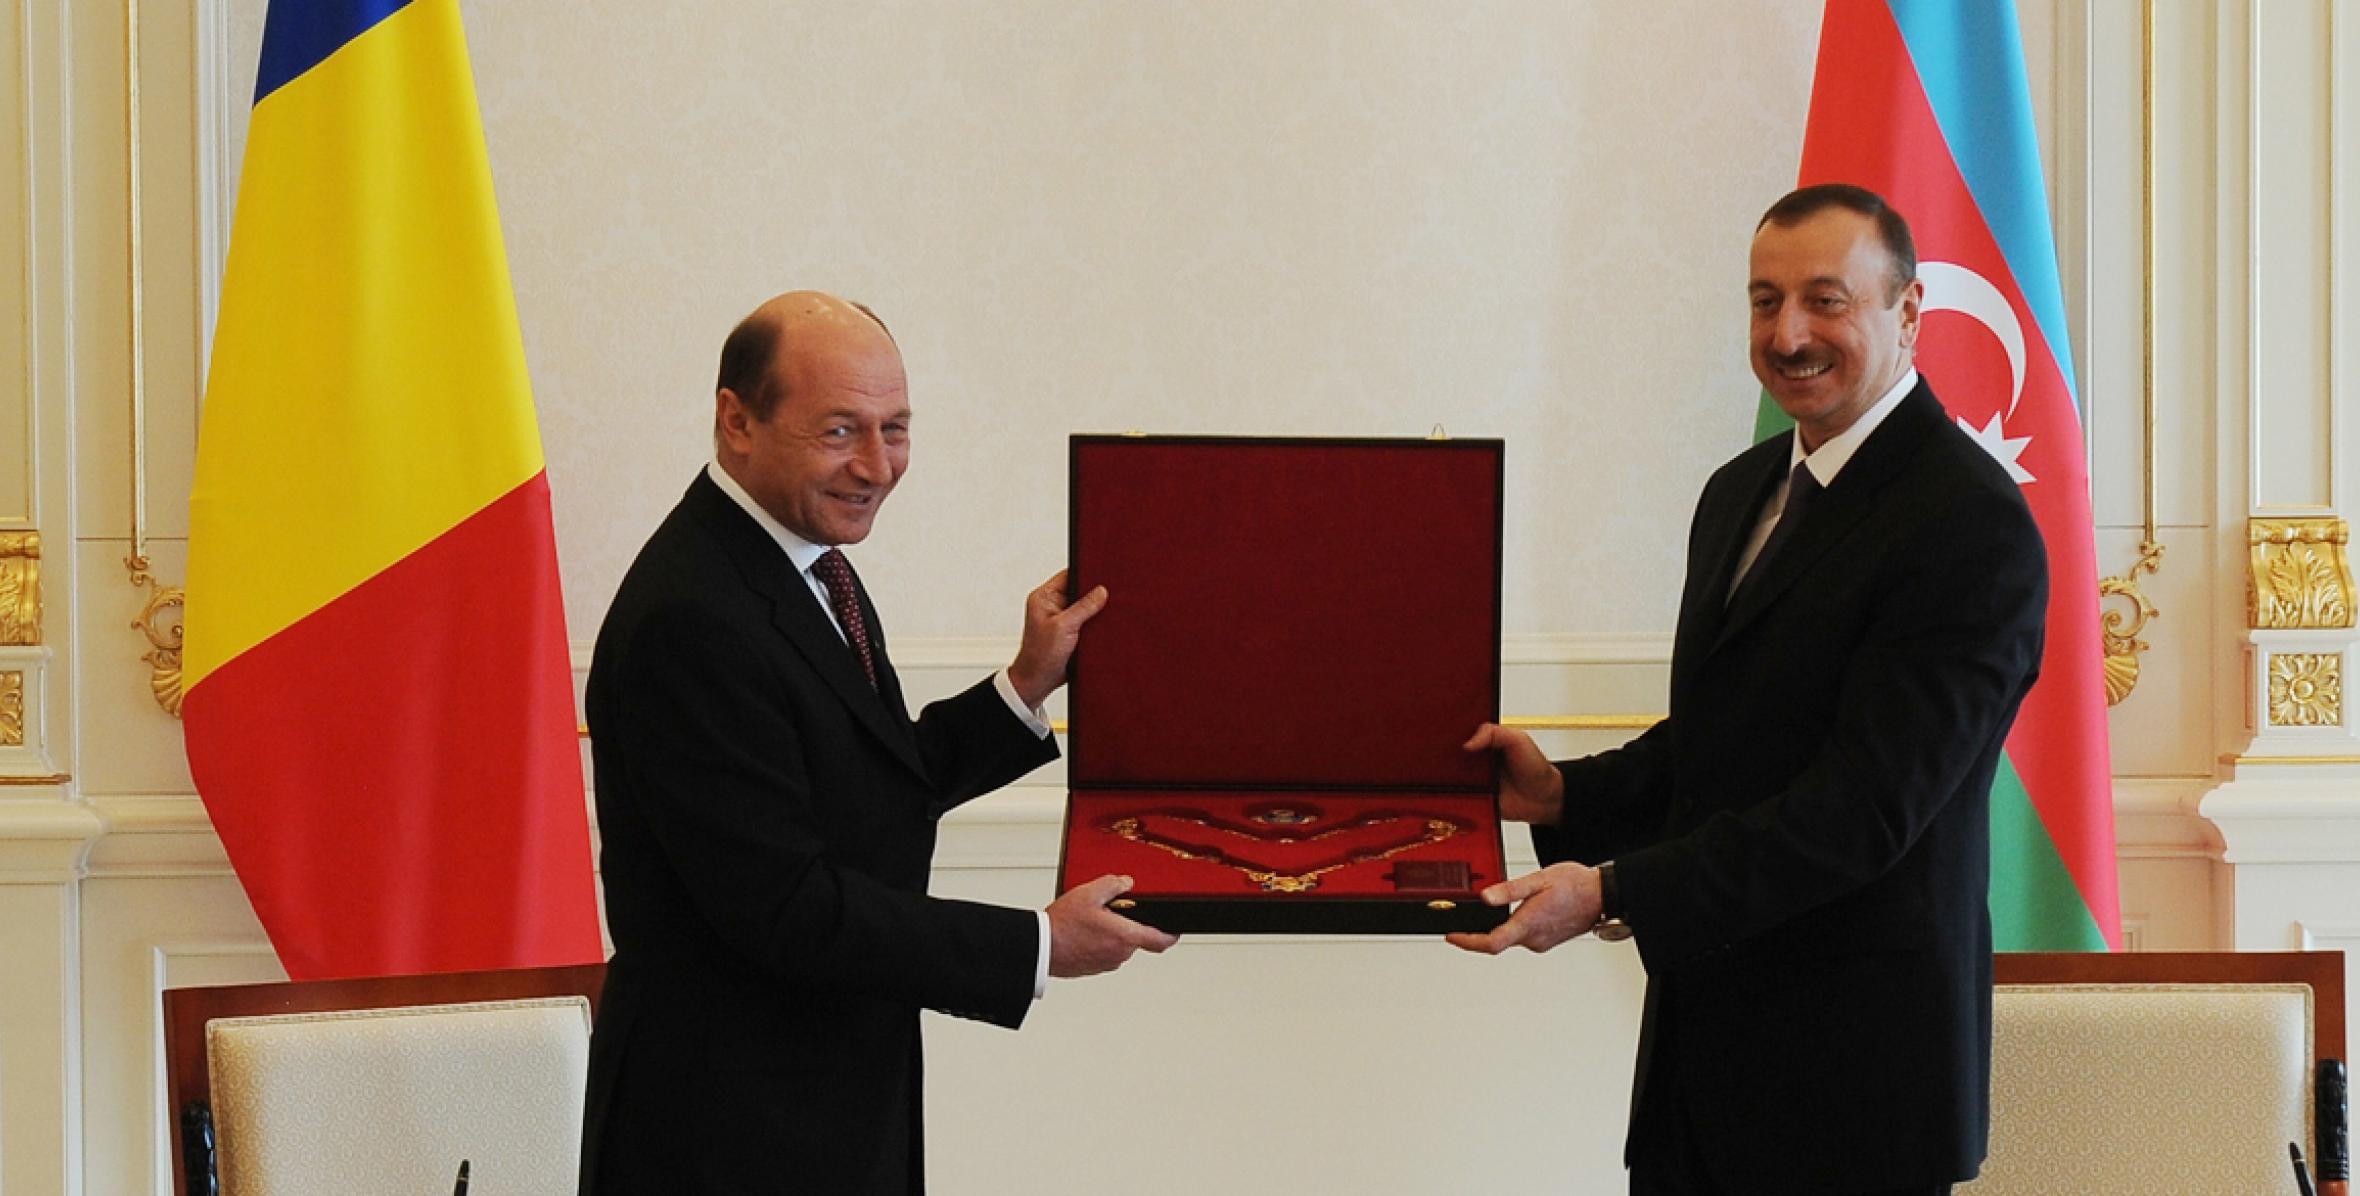 Состоялась церемония награждения Президента Румынии Траяна Бэсеску и Ильхама Алиева высшими орденами